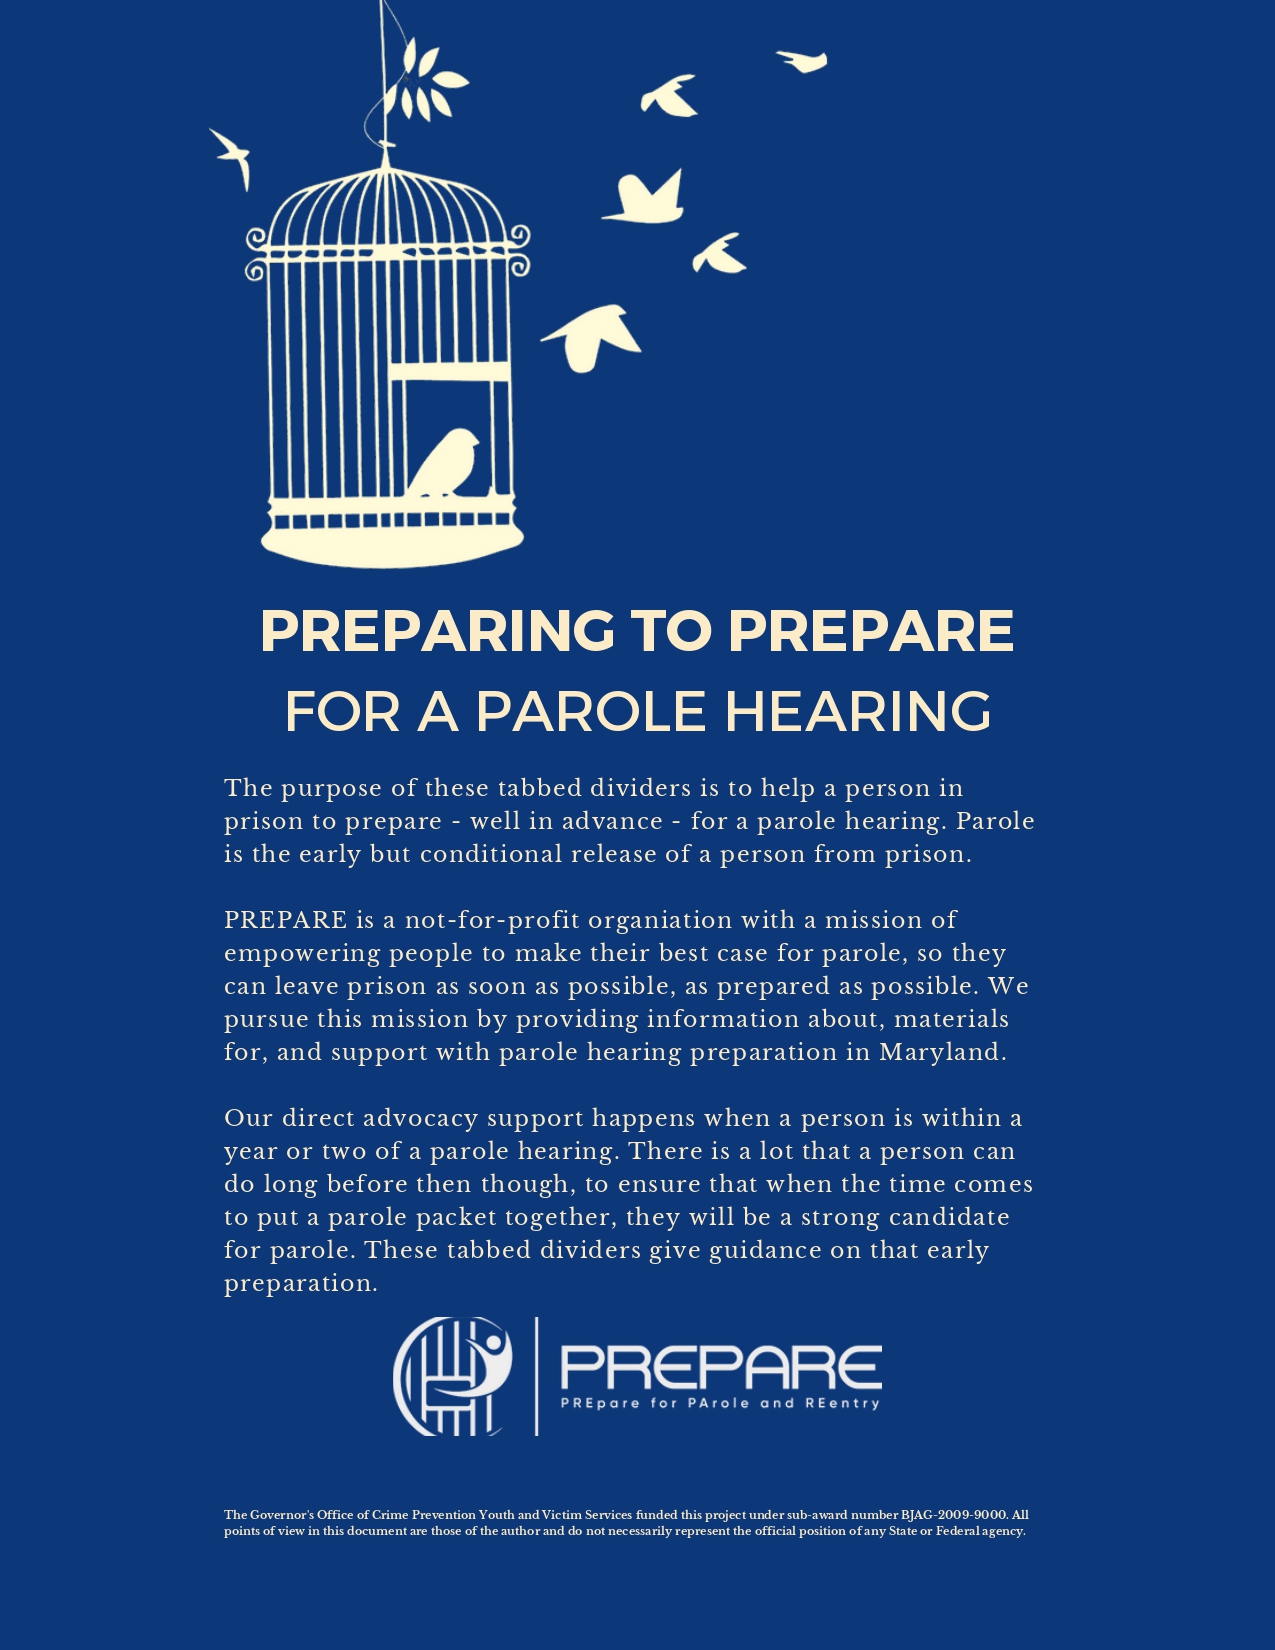 PREPARE to Prepare for parole hearing